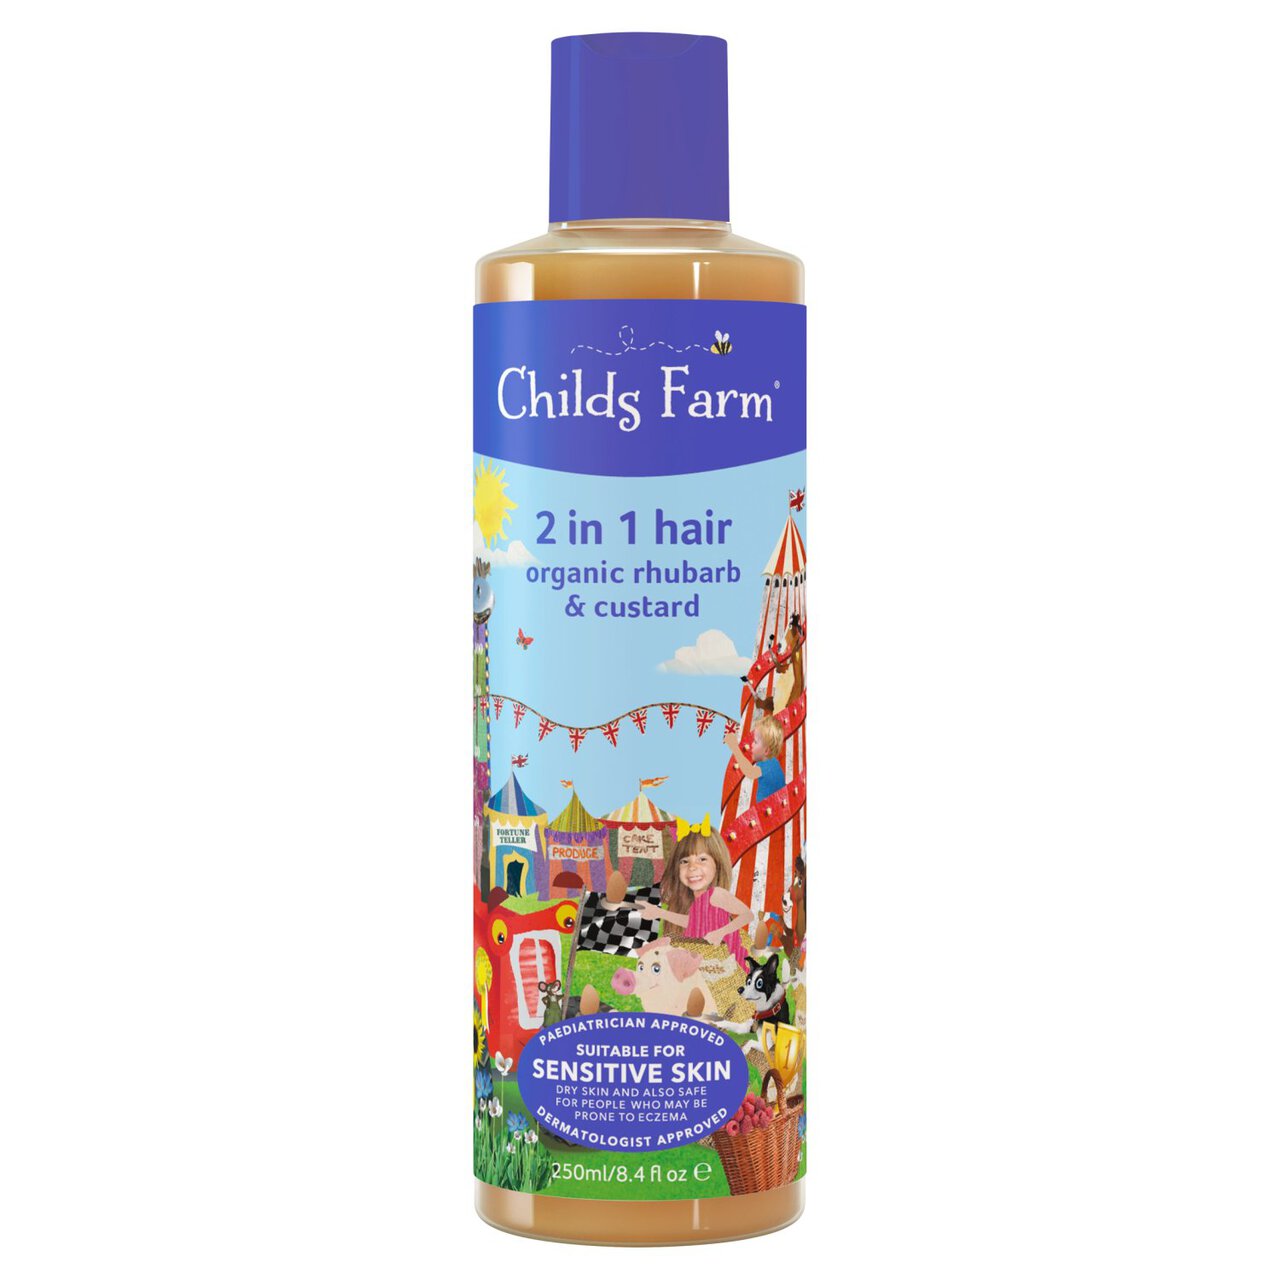 Childs Farm Kids Rhubarb & Custard 2 in 1 Shampoo & Conditioner 250ml